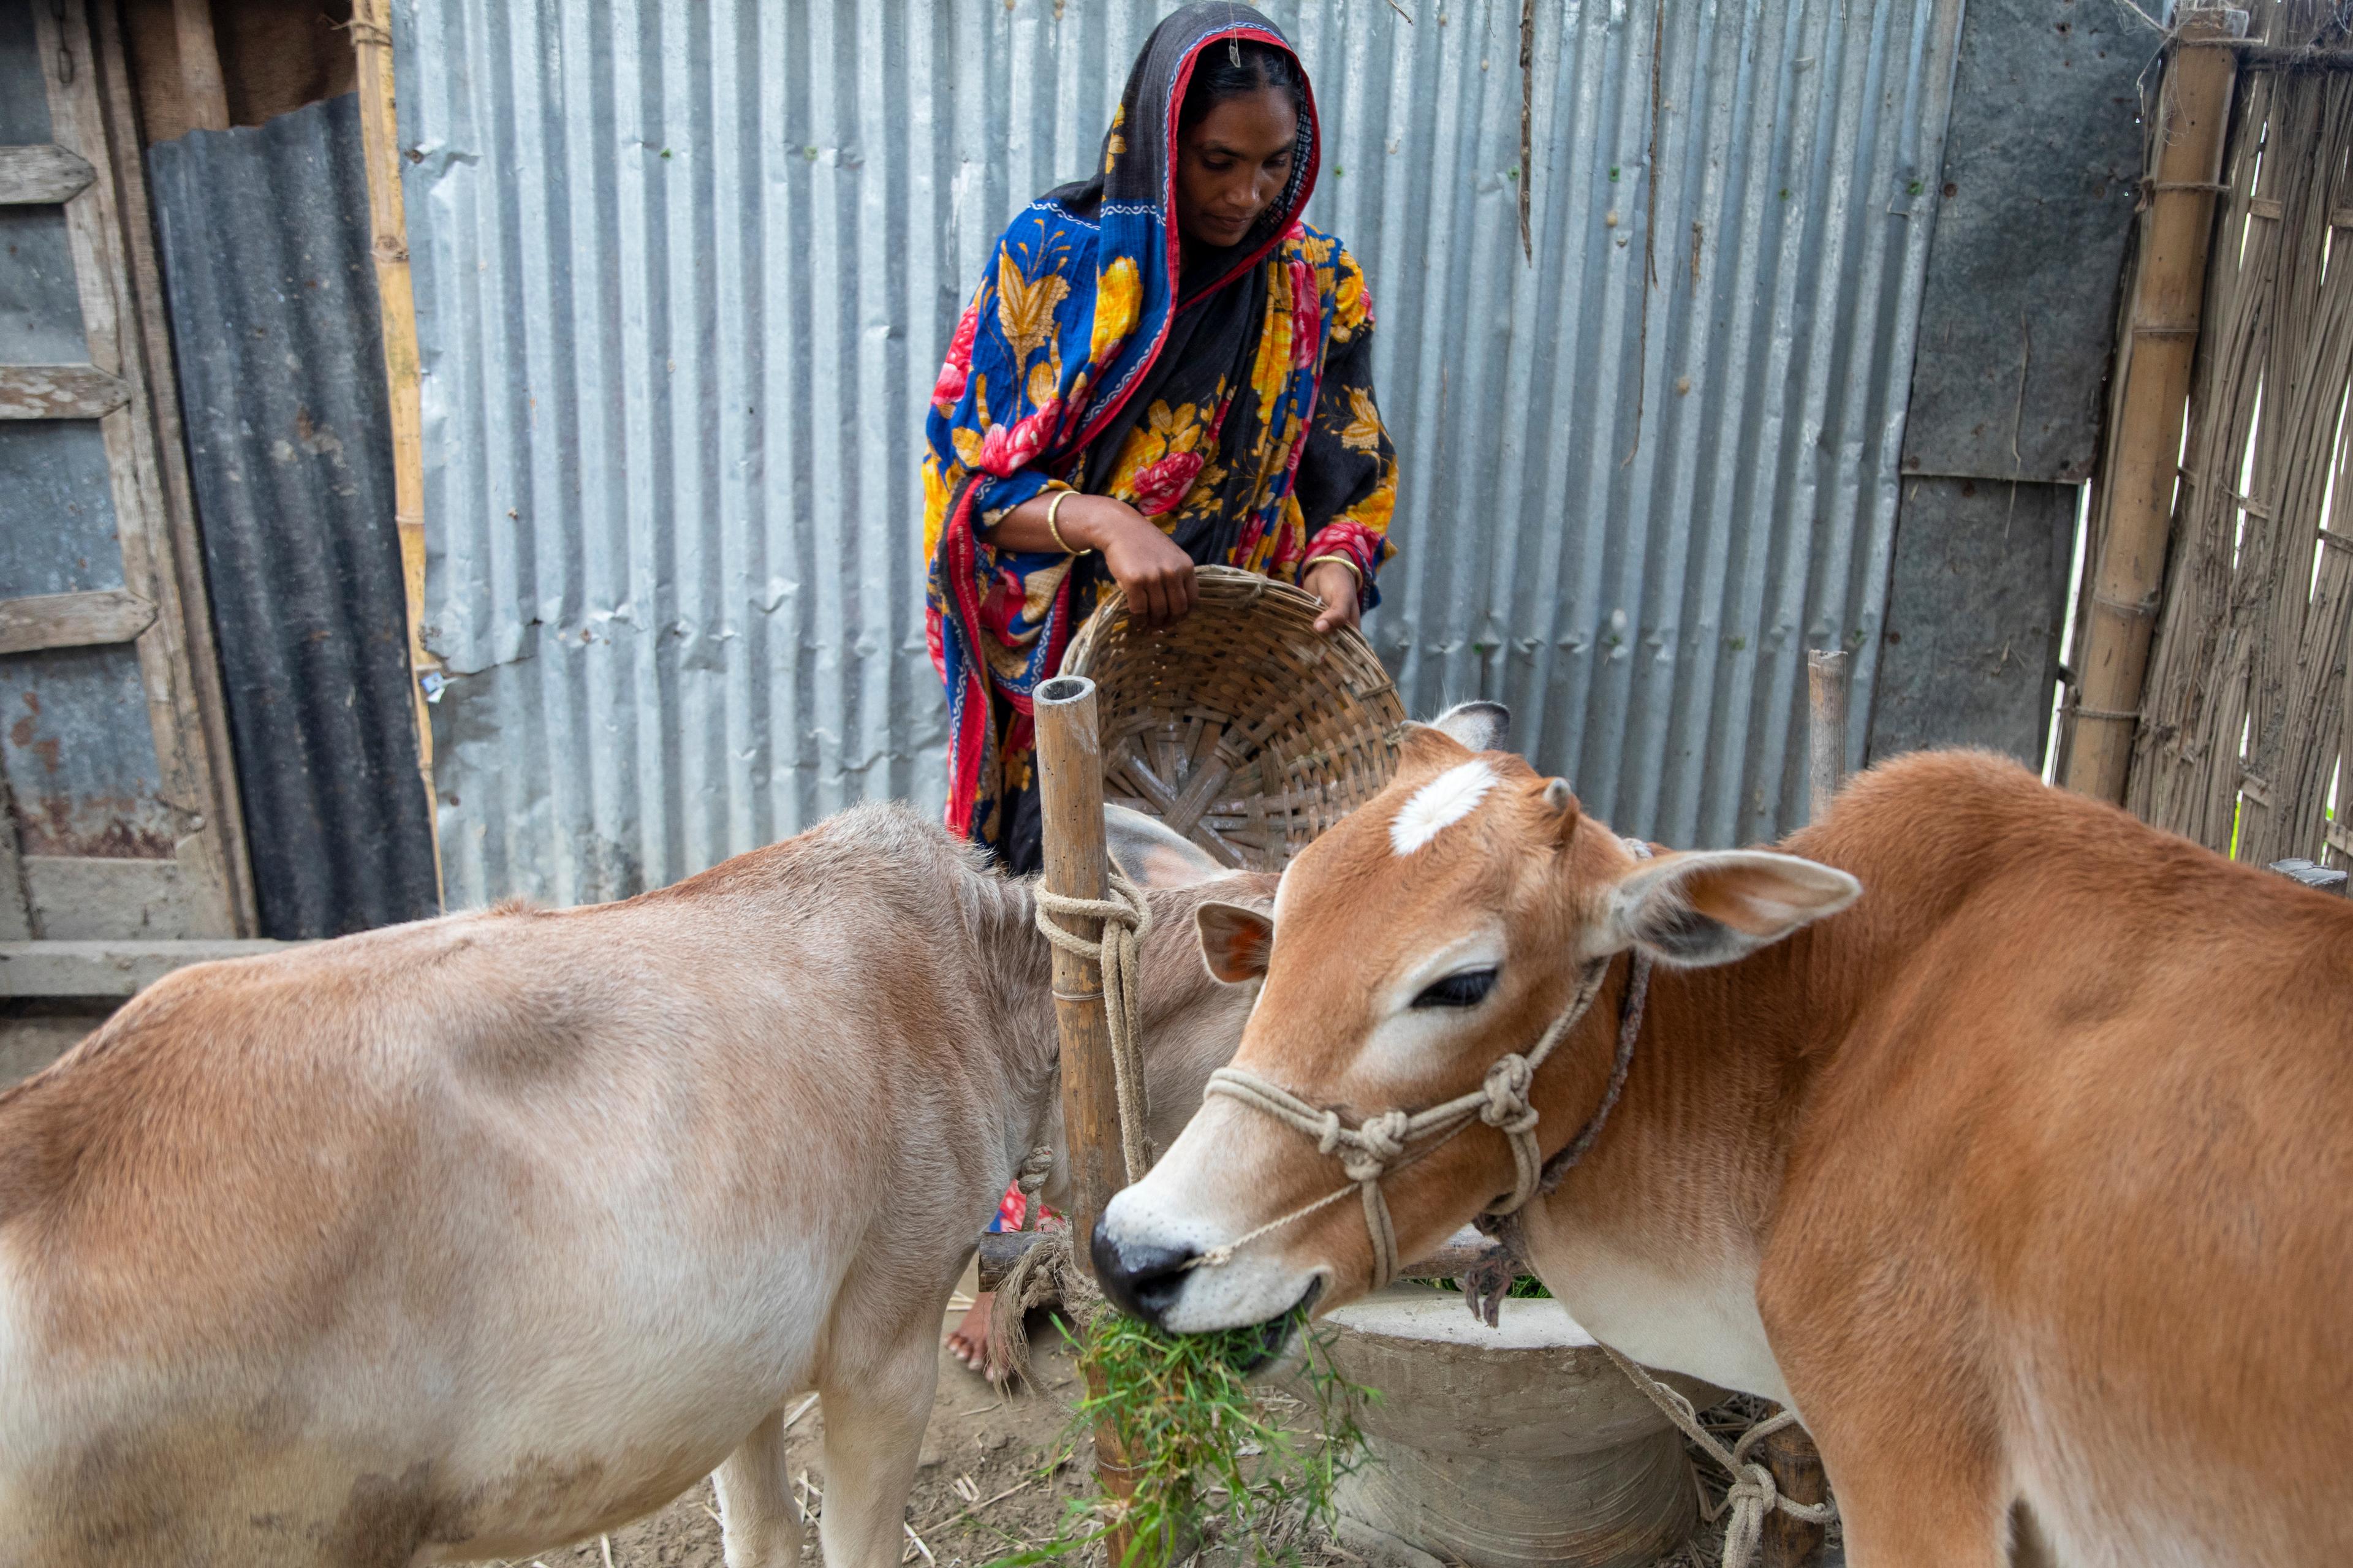 Une femme tient un panier à la main. Devant elle se trouvent deux vaches. L'une d'elles est en train de manger.